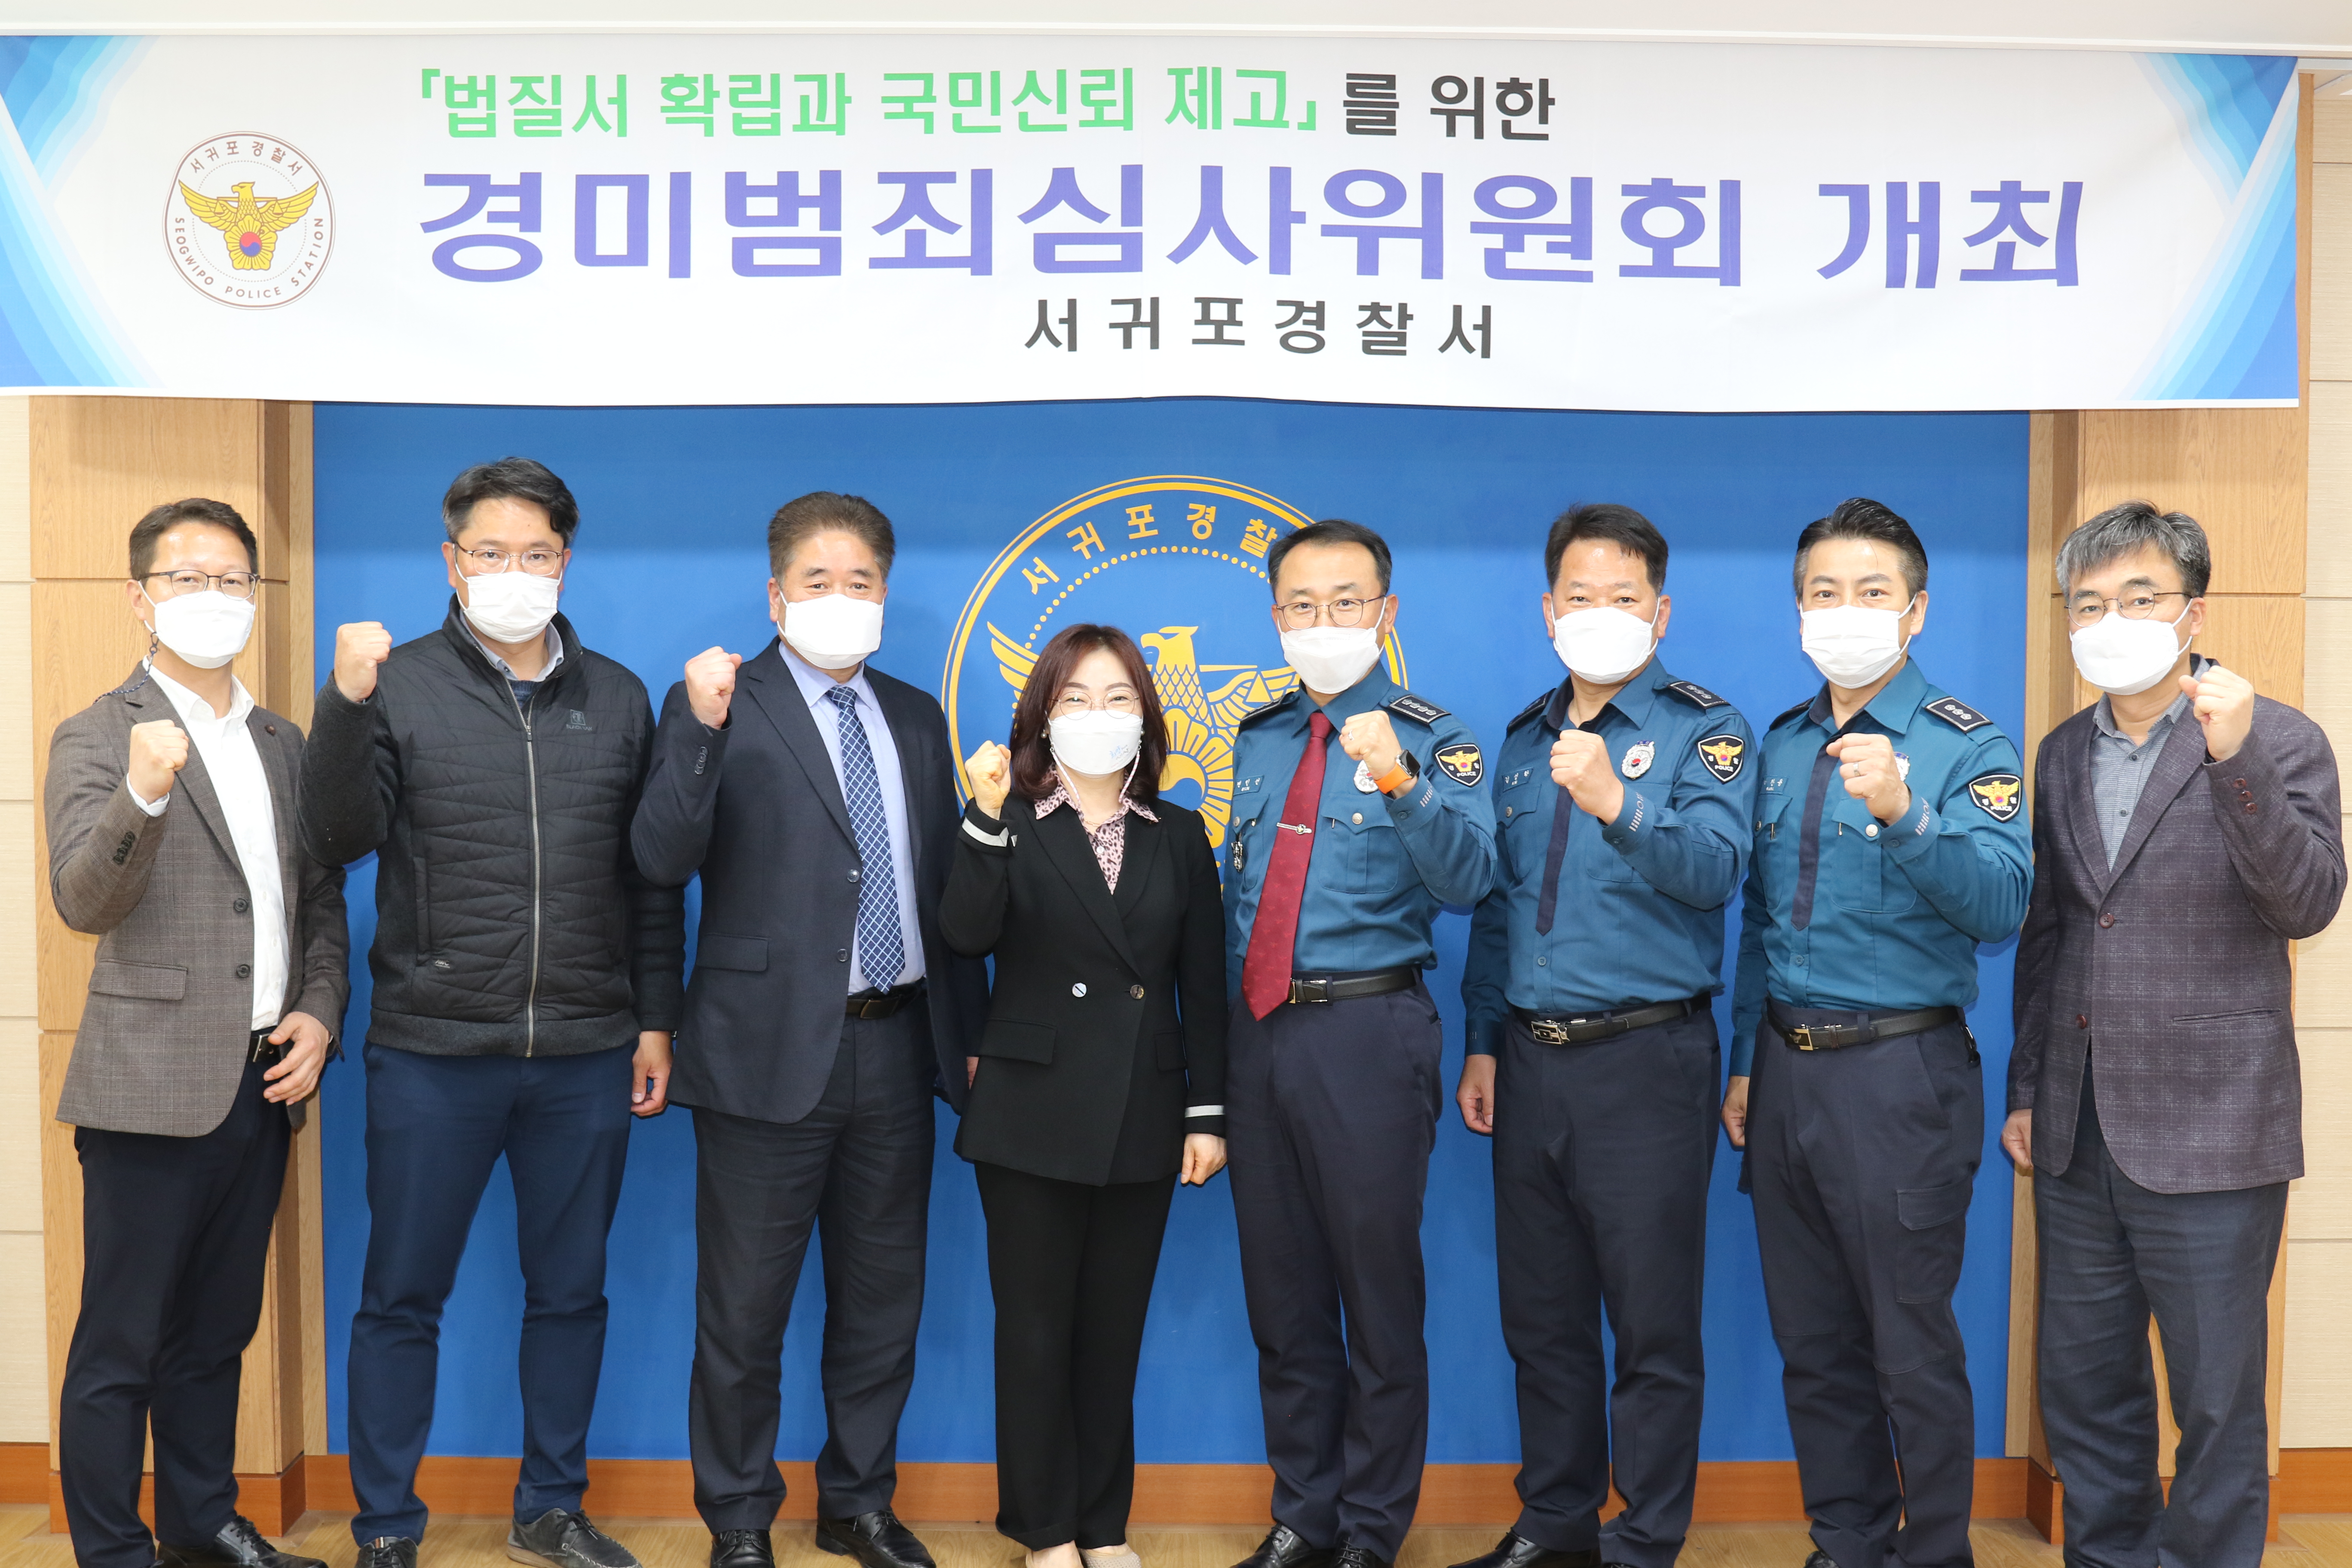 서귀포서, 제 1차 경미범죄심사위원회 개최